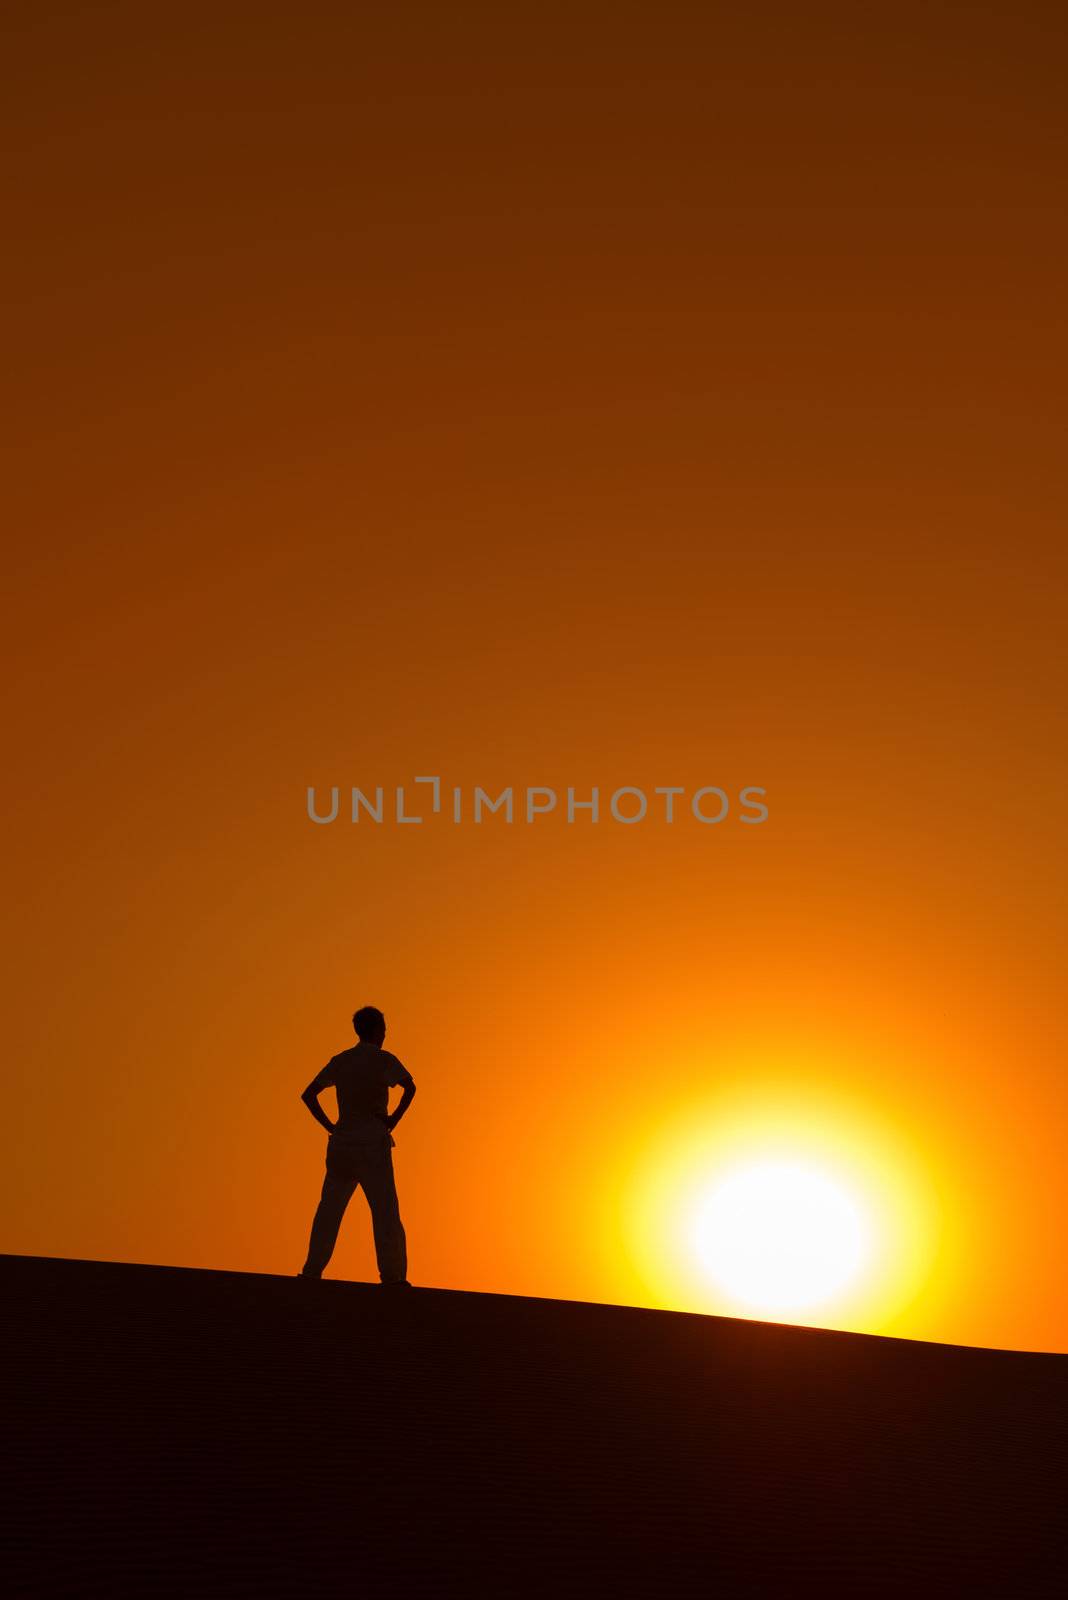 Man at orange background with big sun under horizon with heroic achievement gesture